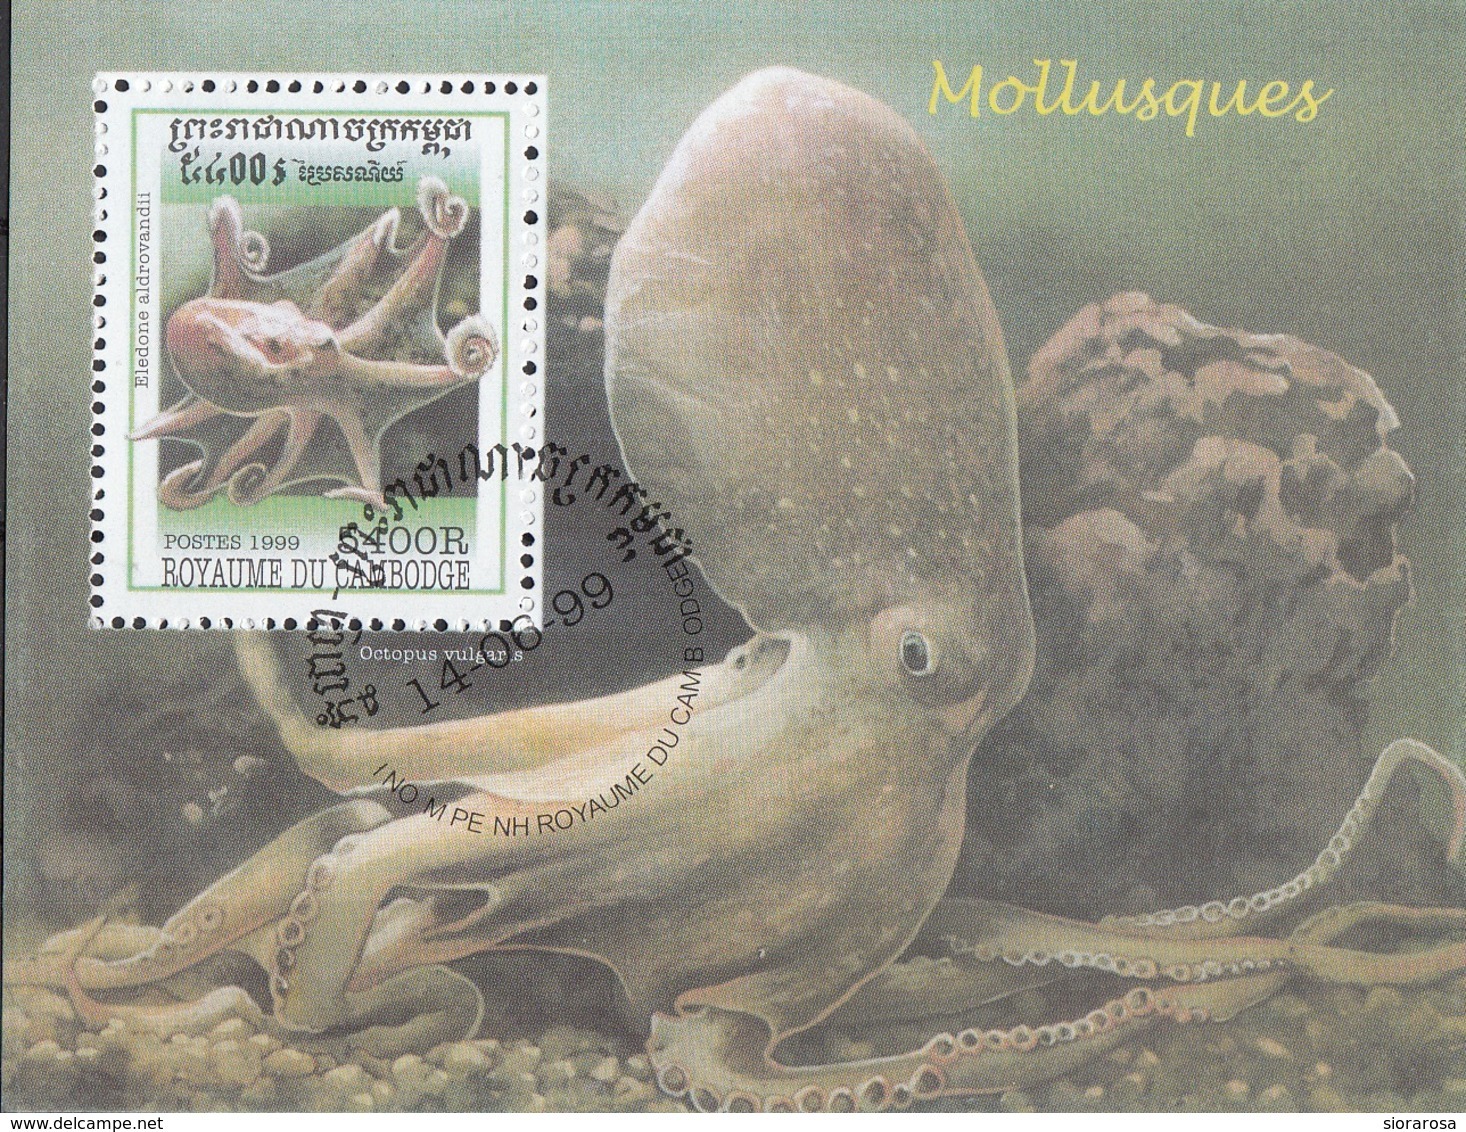 Cambogia 1999 Sc. 1845 Mollusques Molluschi Polipo Eledone Aldrovandi Cambodia Cambodge  Sheet Perf.CTO - Cambogia